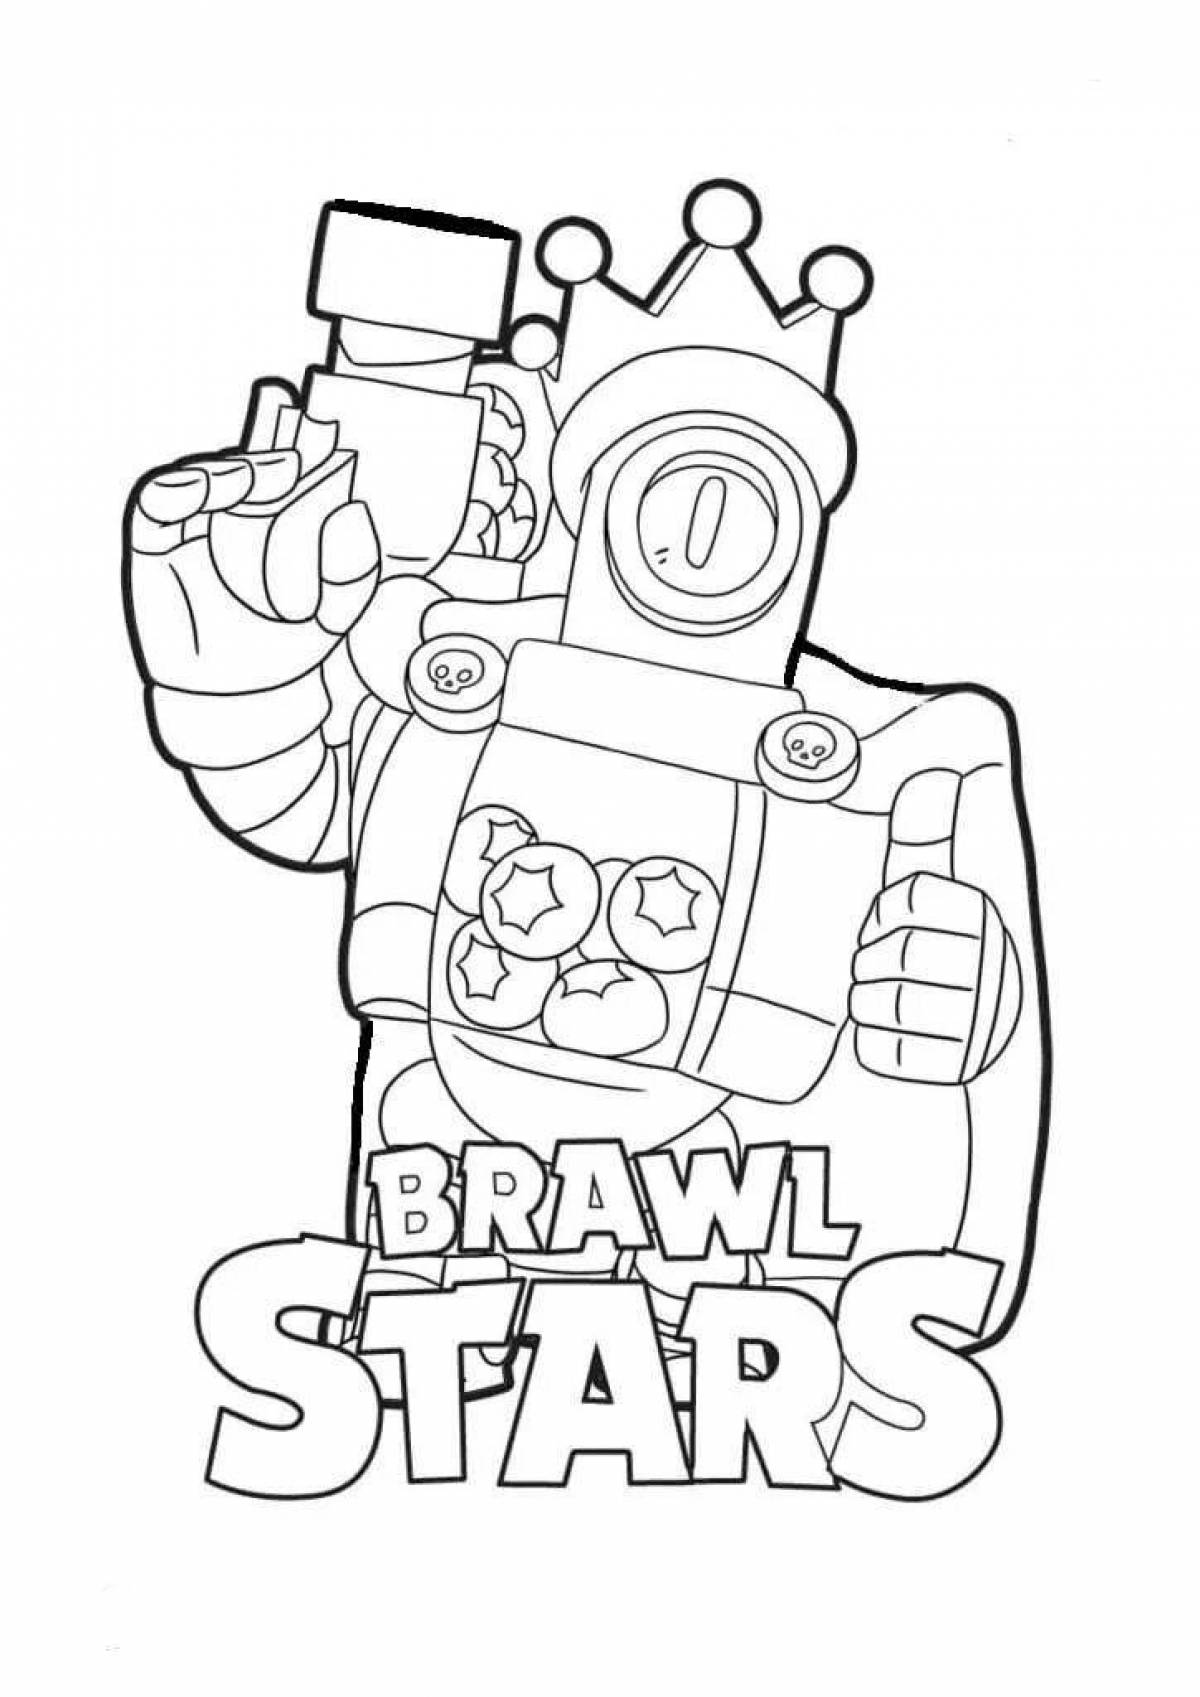 Fun brawl stars coloring page